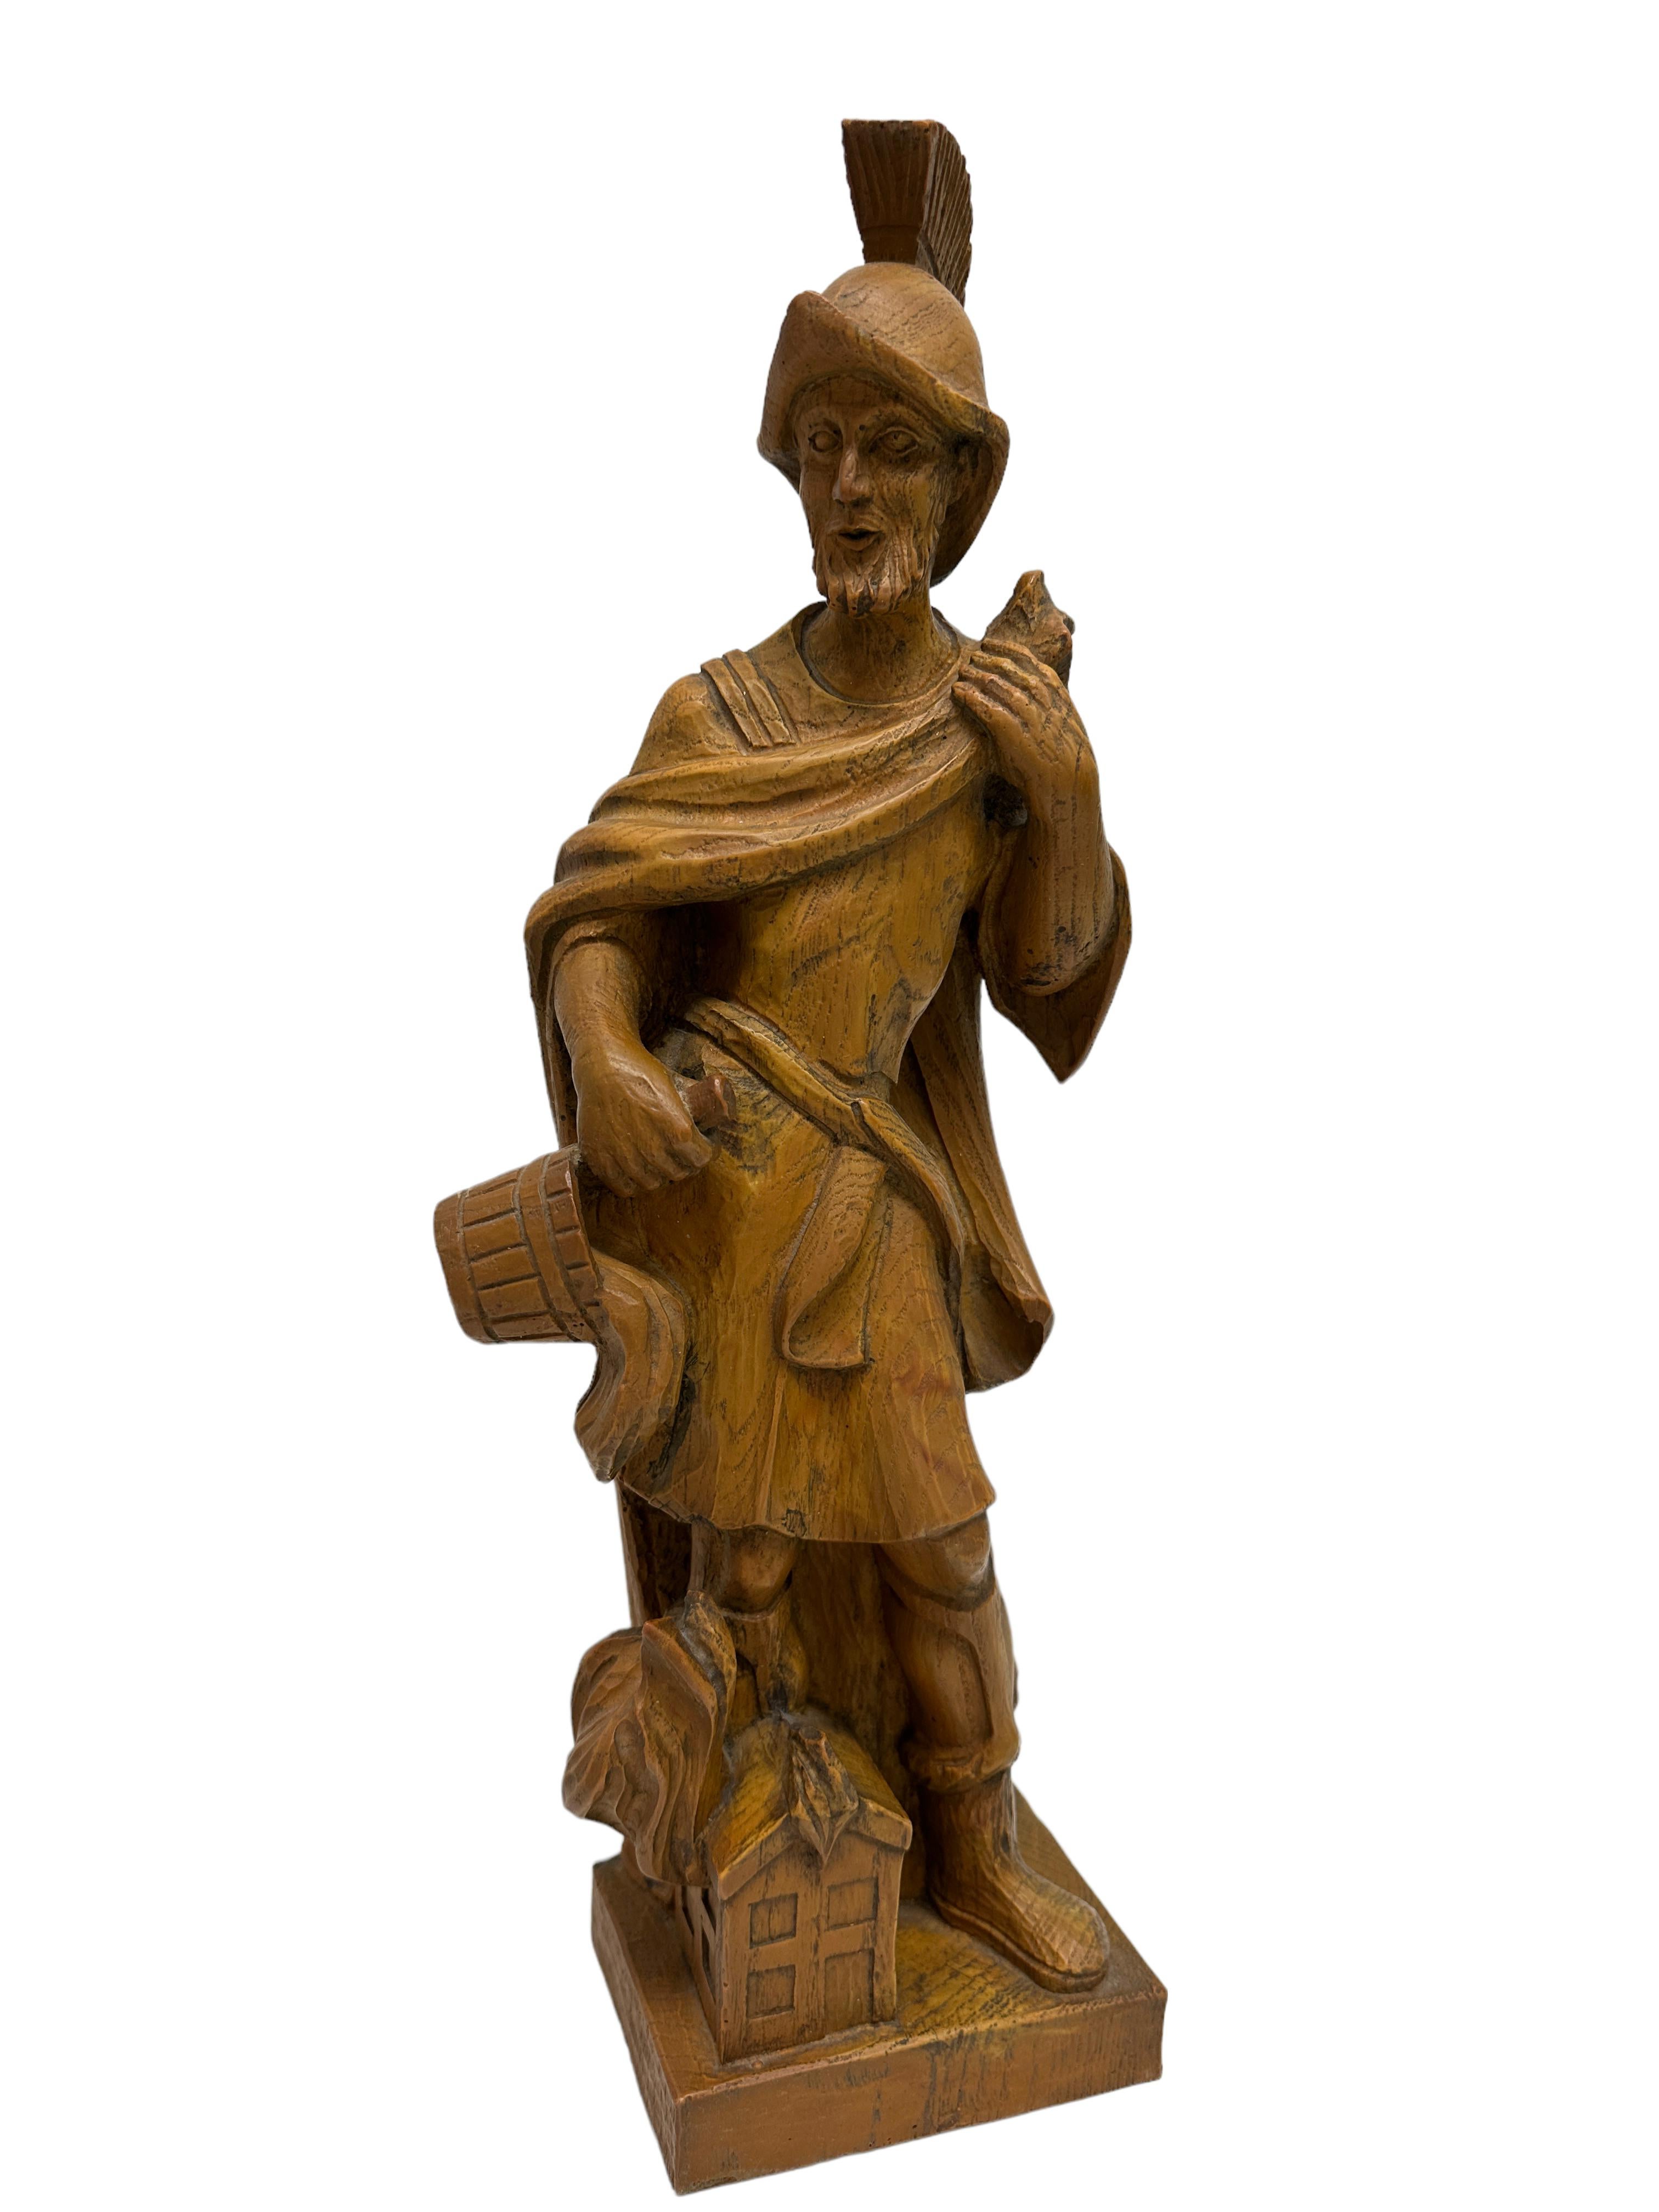 Kieferschnitzerei des Heiligen Florian, des Schutzpatrons der Feuerwehr, Österreich, 20. Jahrhundert, der Heilige hält mit der einen Hand seinen Umhang und schüttet mit der anderen einen Eimer Wasser über ein brennendes Gebäude. Mit einer